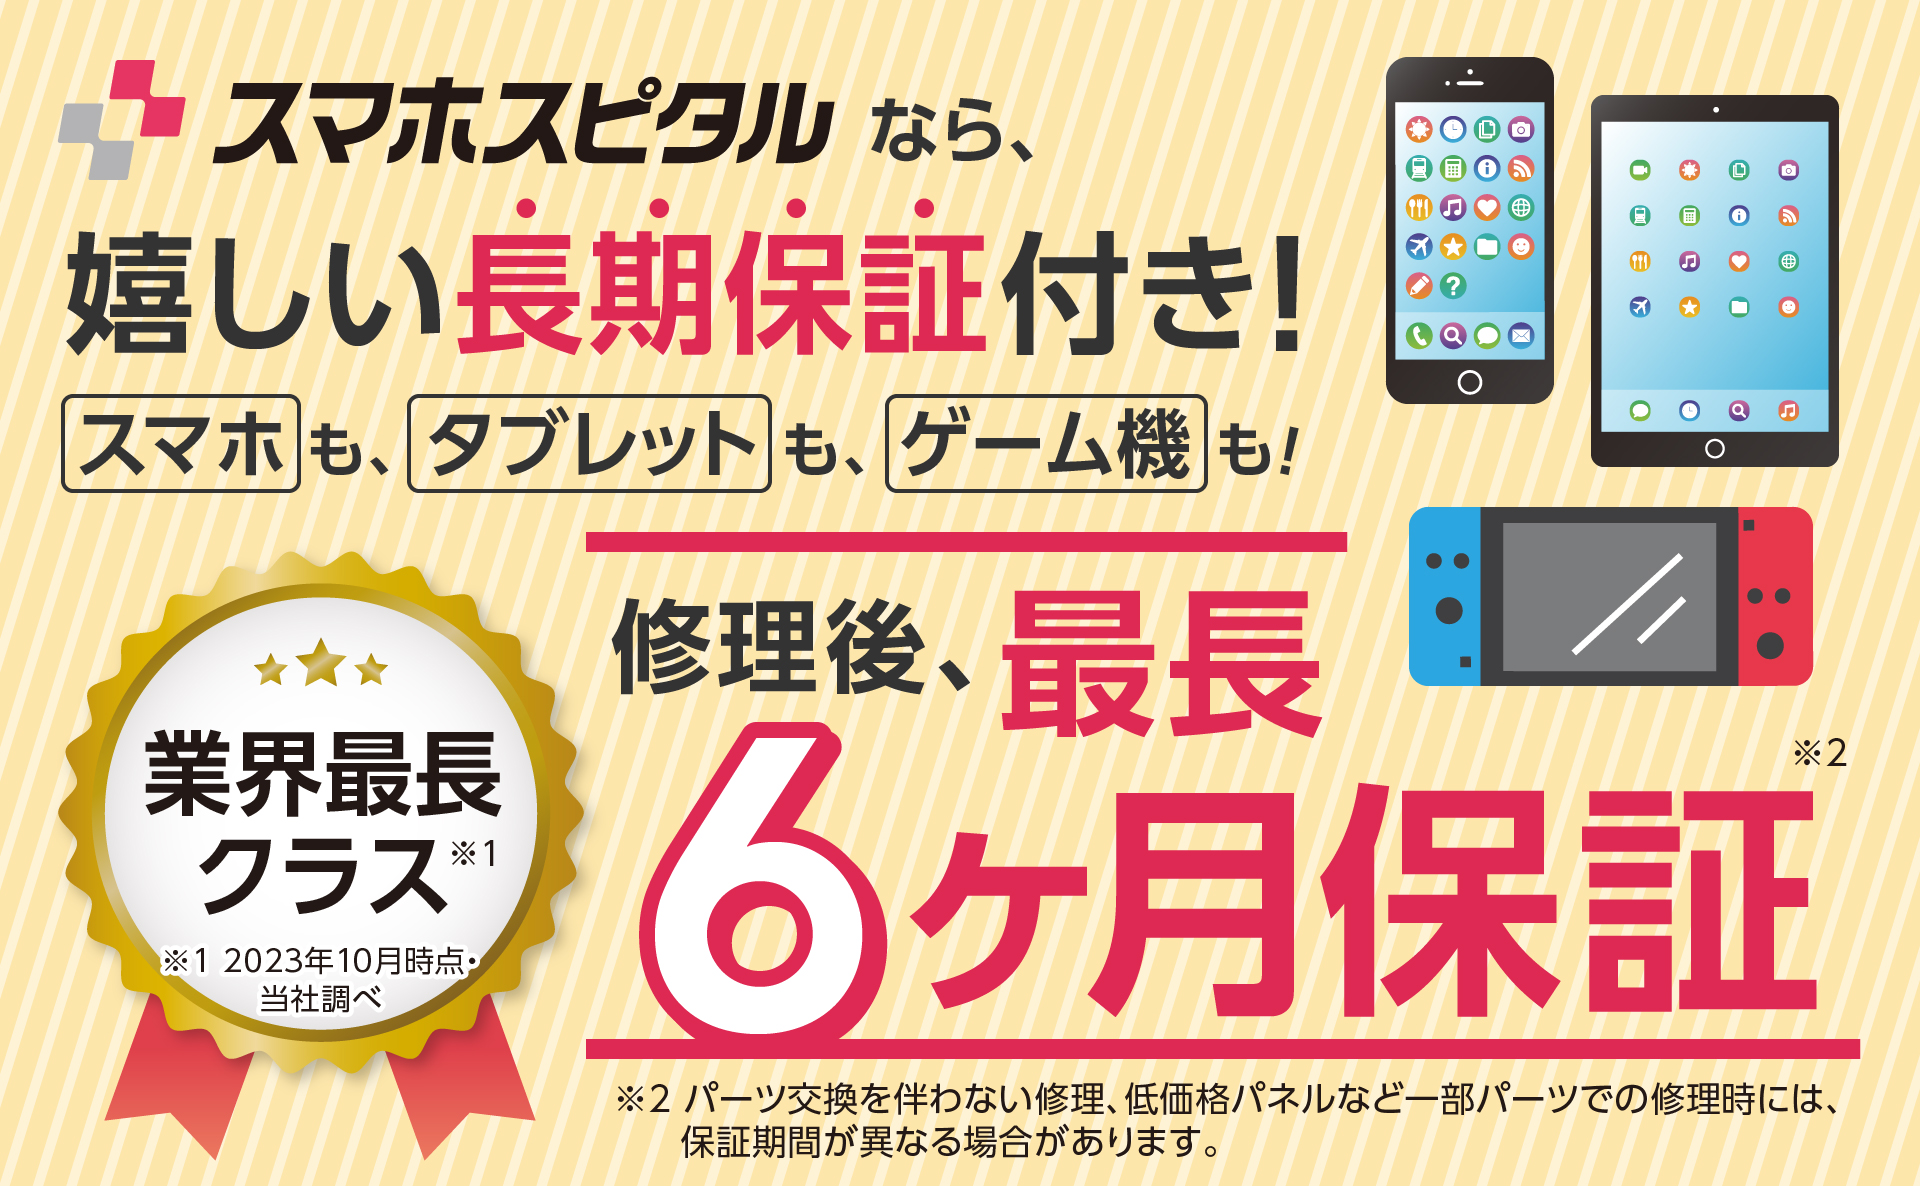 神戸三宮のスマホ・iPhone修理なら、長期保証のスマホスピタルへ